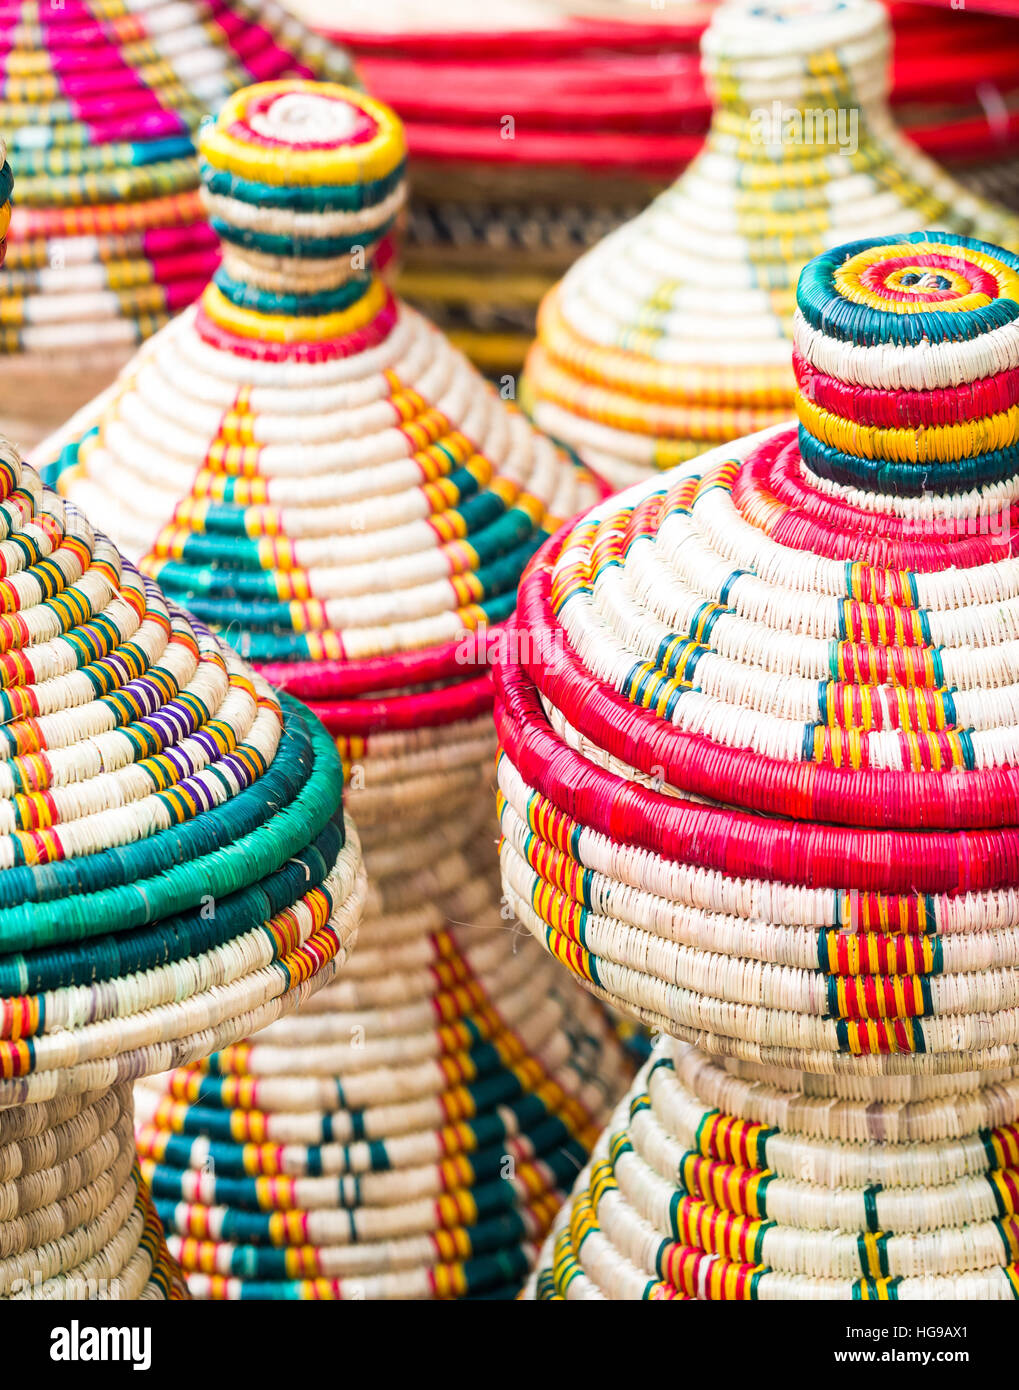 Des paniers faits main éthiopien Habesha vendus sur un marché local en Éthiopie. Banque D'Images